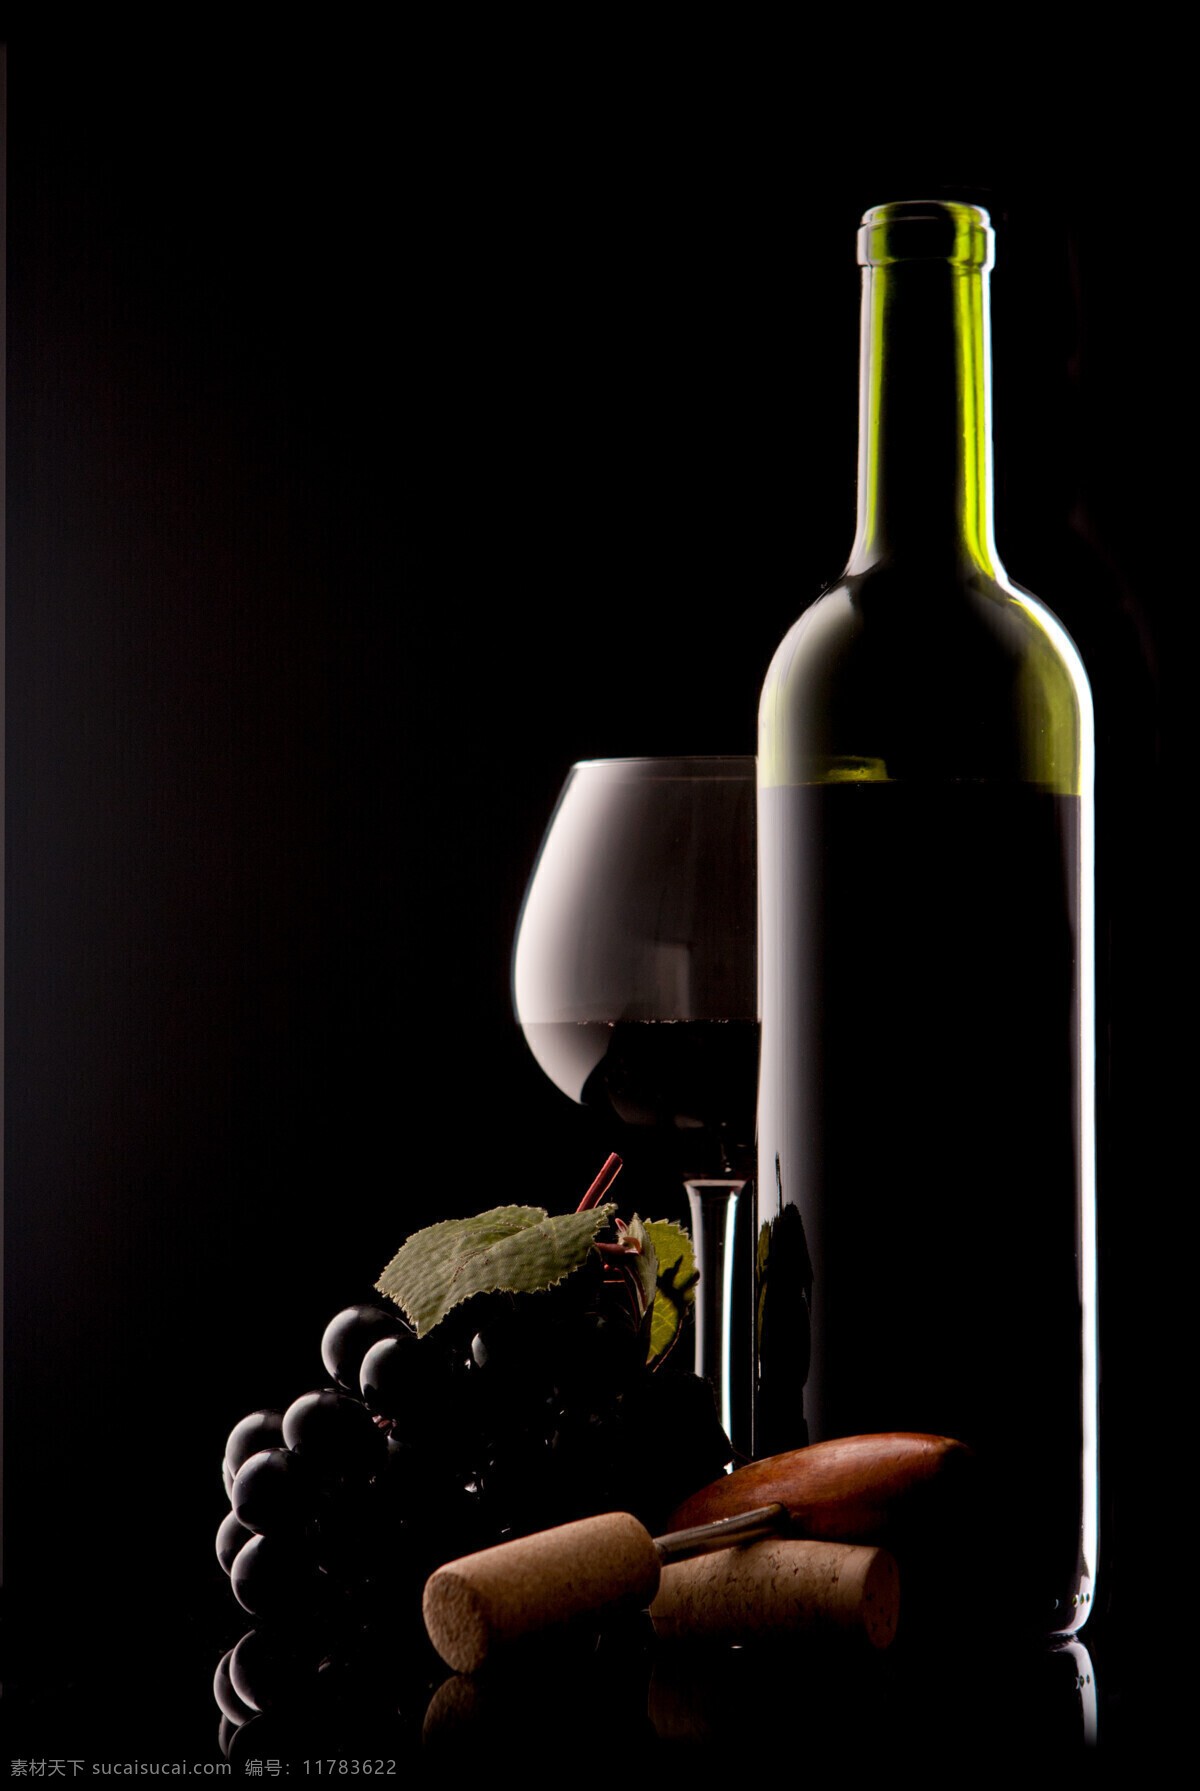 葡萄 美酒 红酒与葡萄 饮品 红酒 葡萄酒 水果 绿叶 酒瓶 开酒器 酒杯 高脚杯 玻璃杯 酒类图片 餐饮美食